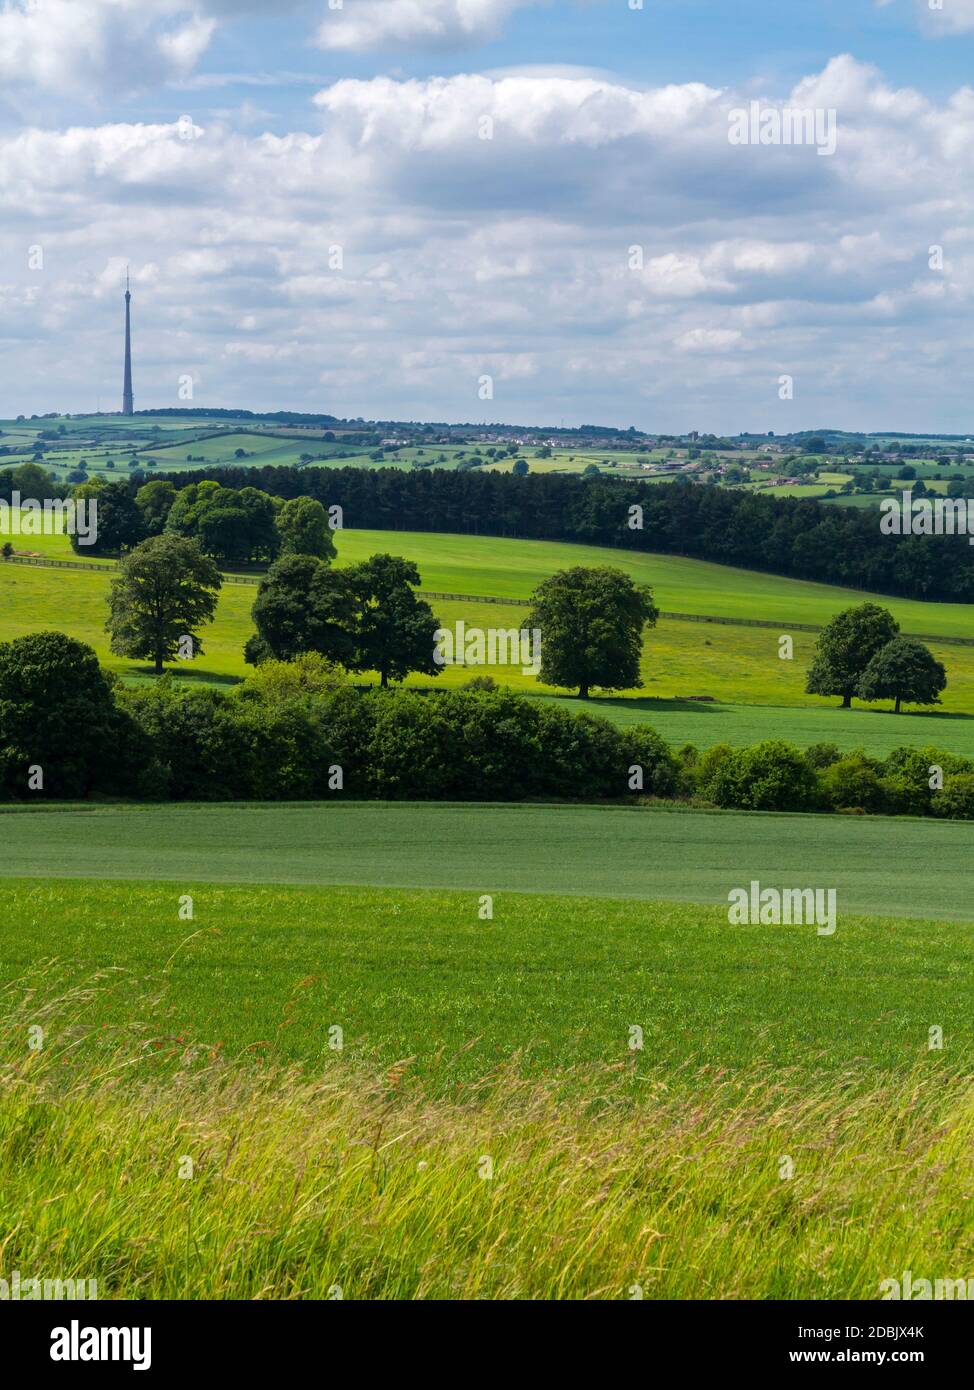 Vue sur la campagne du West Yorkshire près de Wakefield, au nord de l'Angleterre, avec l'émetteur de télévision Emley Moor visible à l'horizon. Banque D'Images